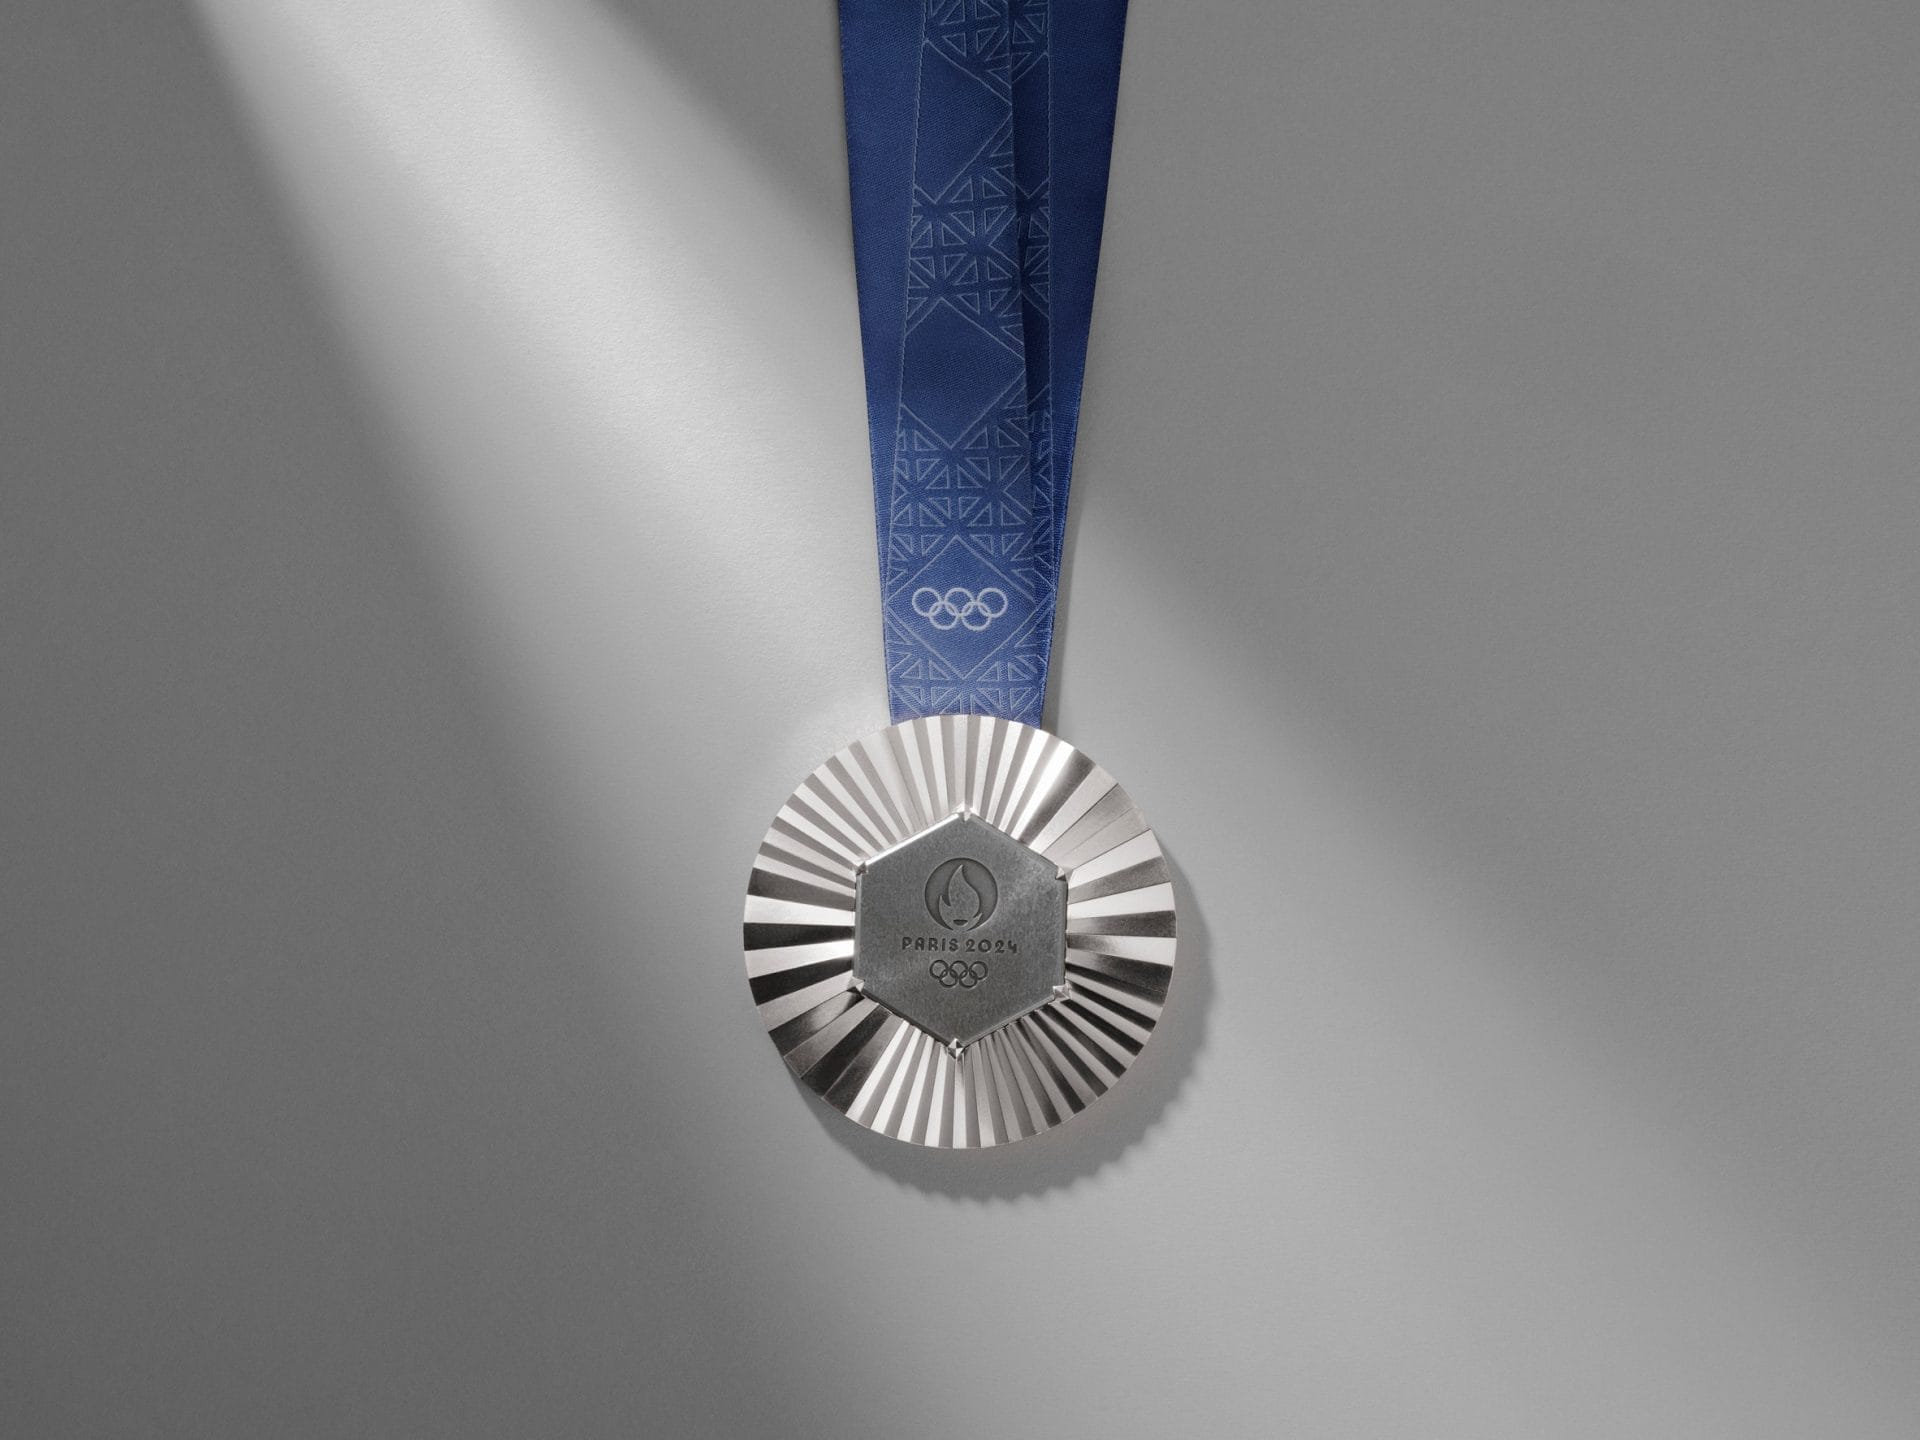 Olympische medaille voor Parijs 2024